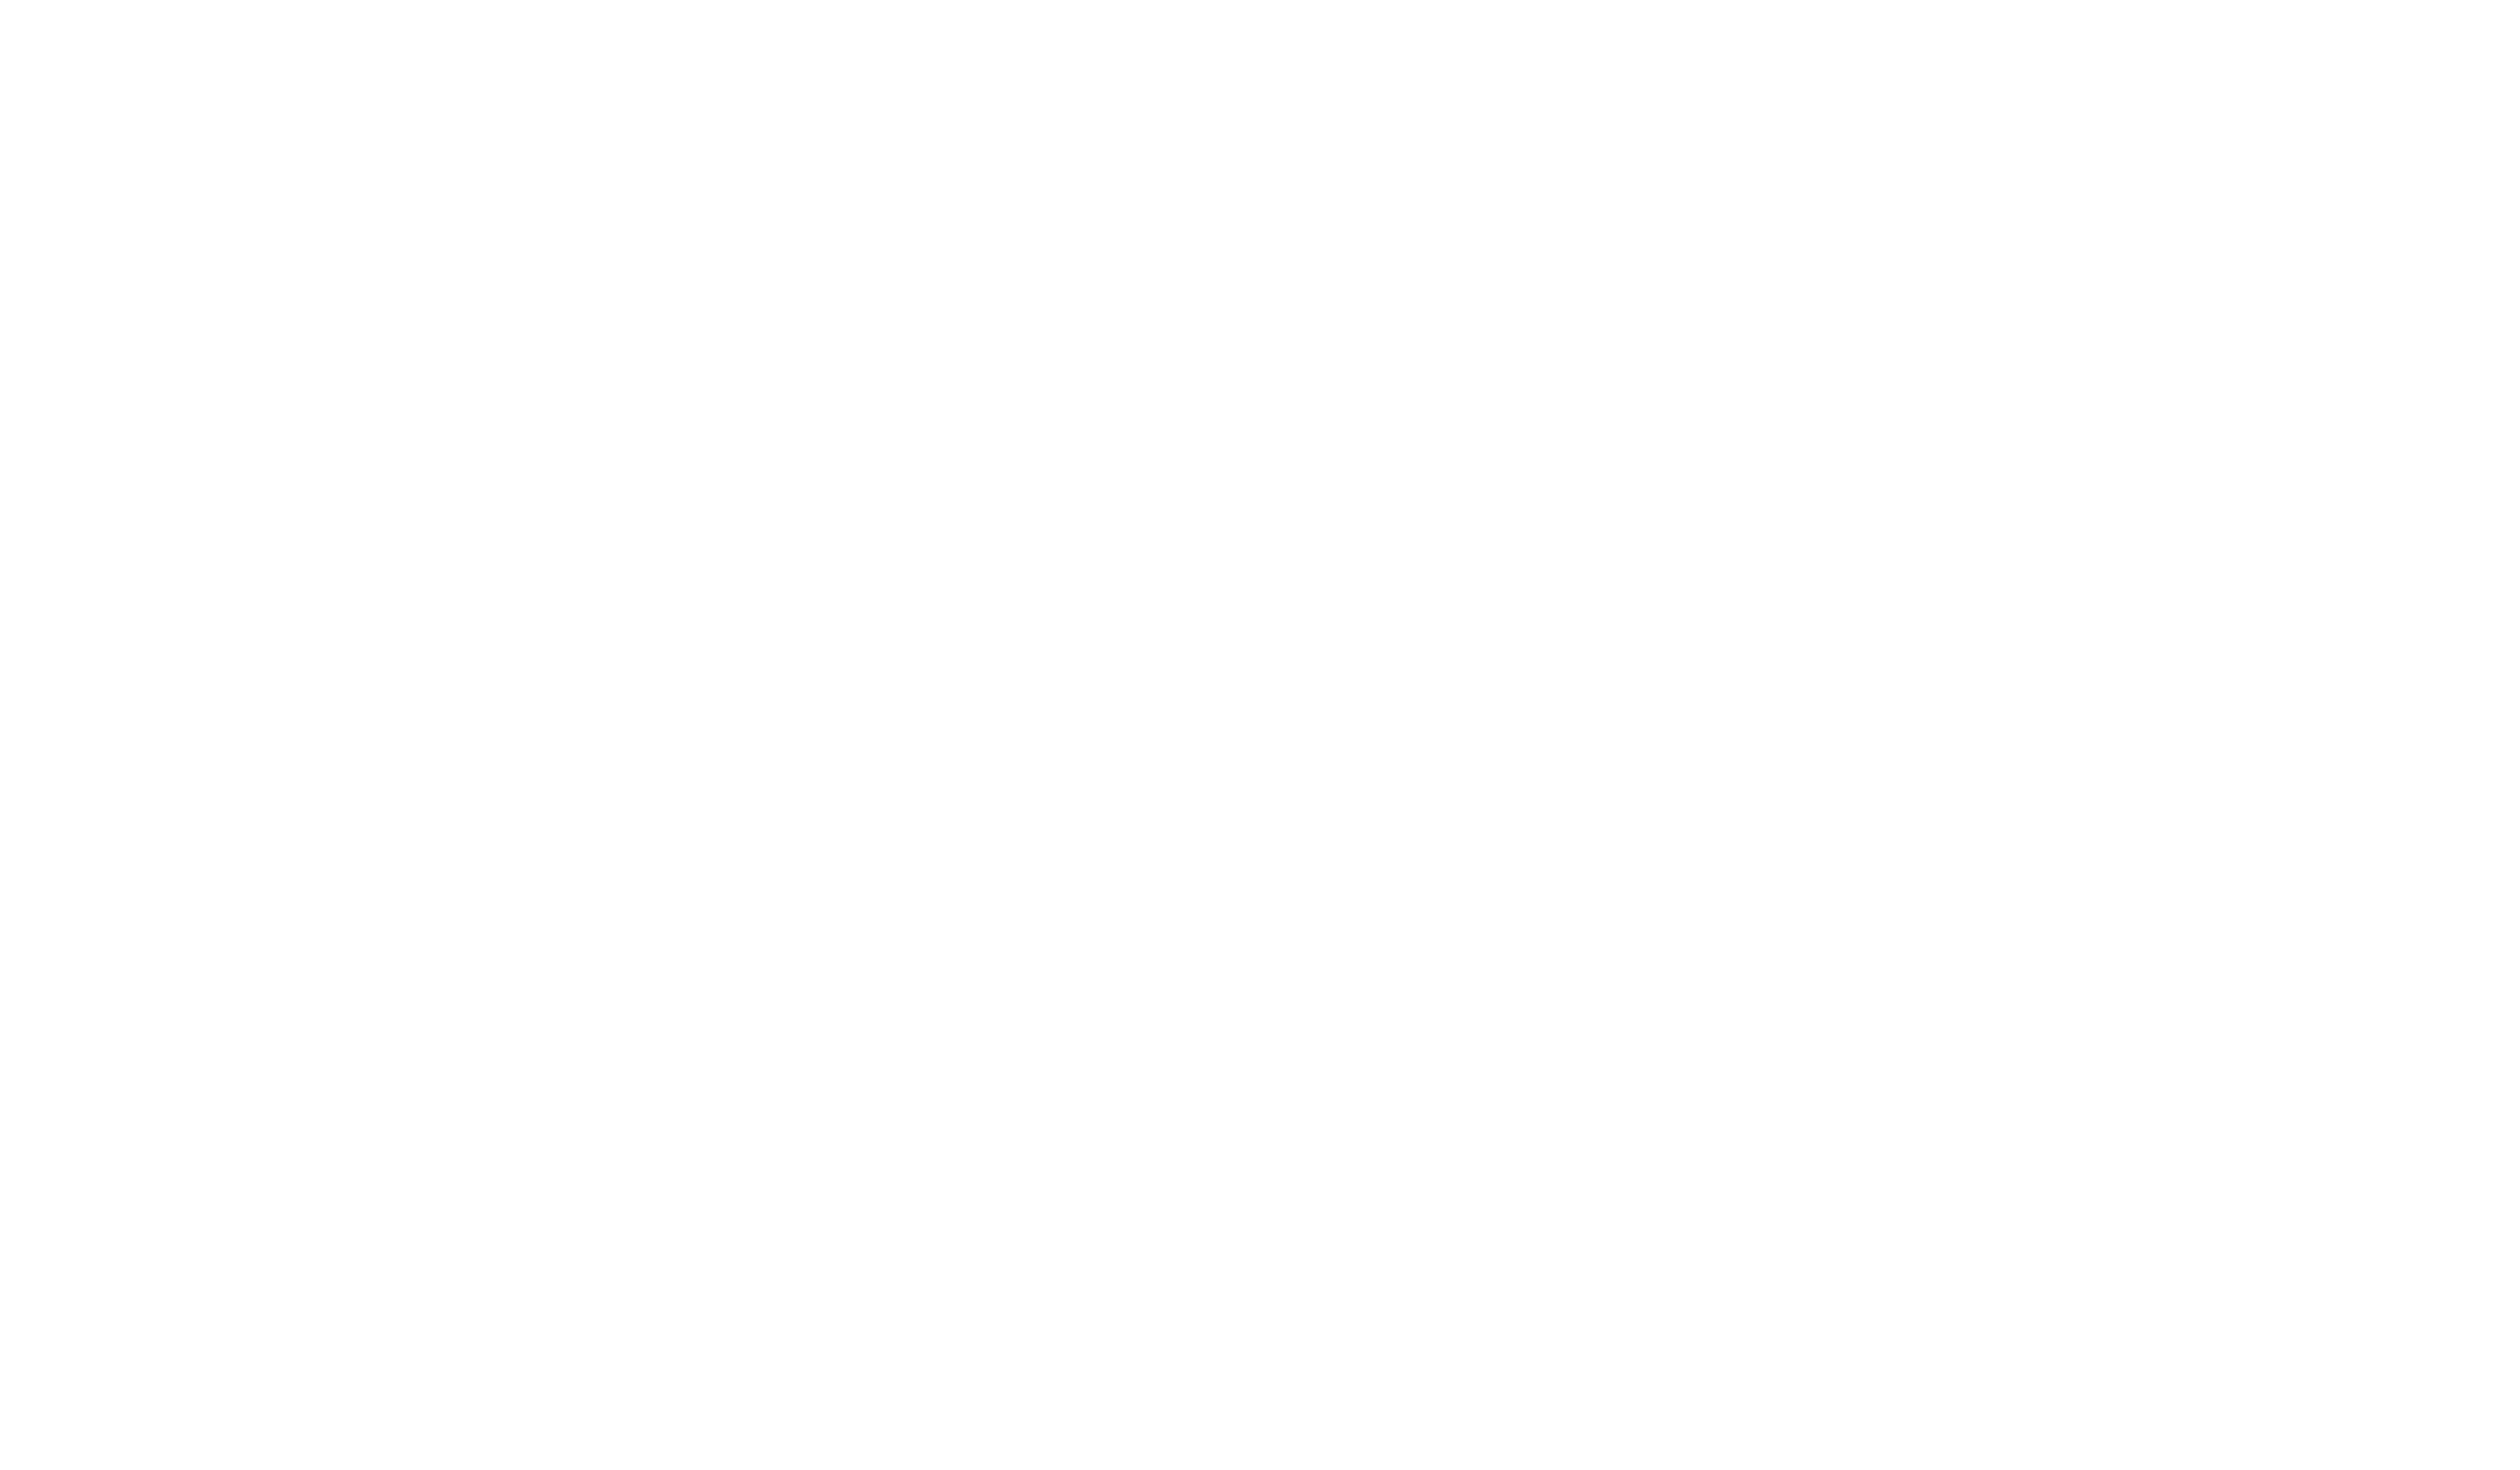 恒伟奇毫米波官网-一家专业从事微波集成电路产品开发、生产和销售的高科技企业